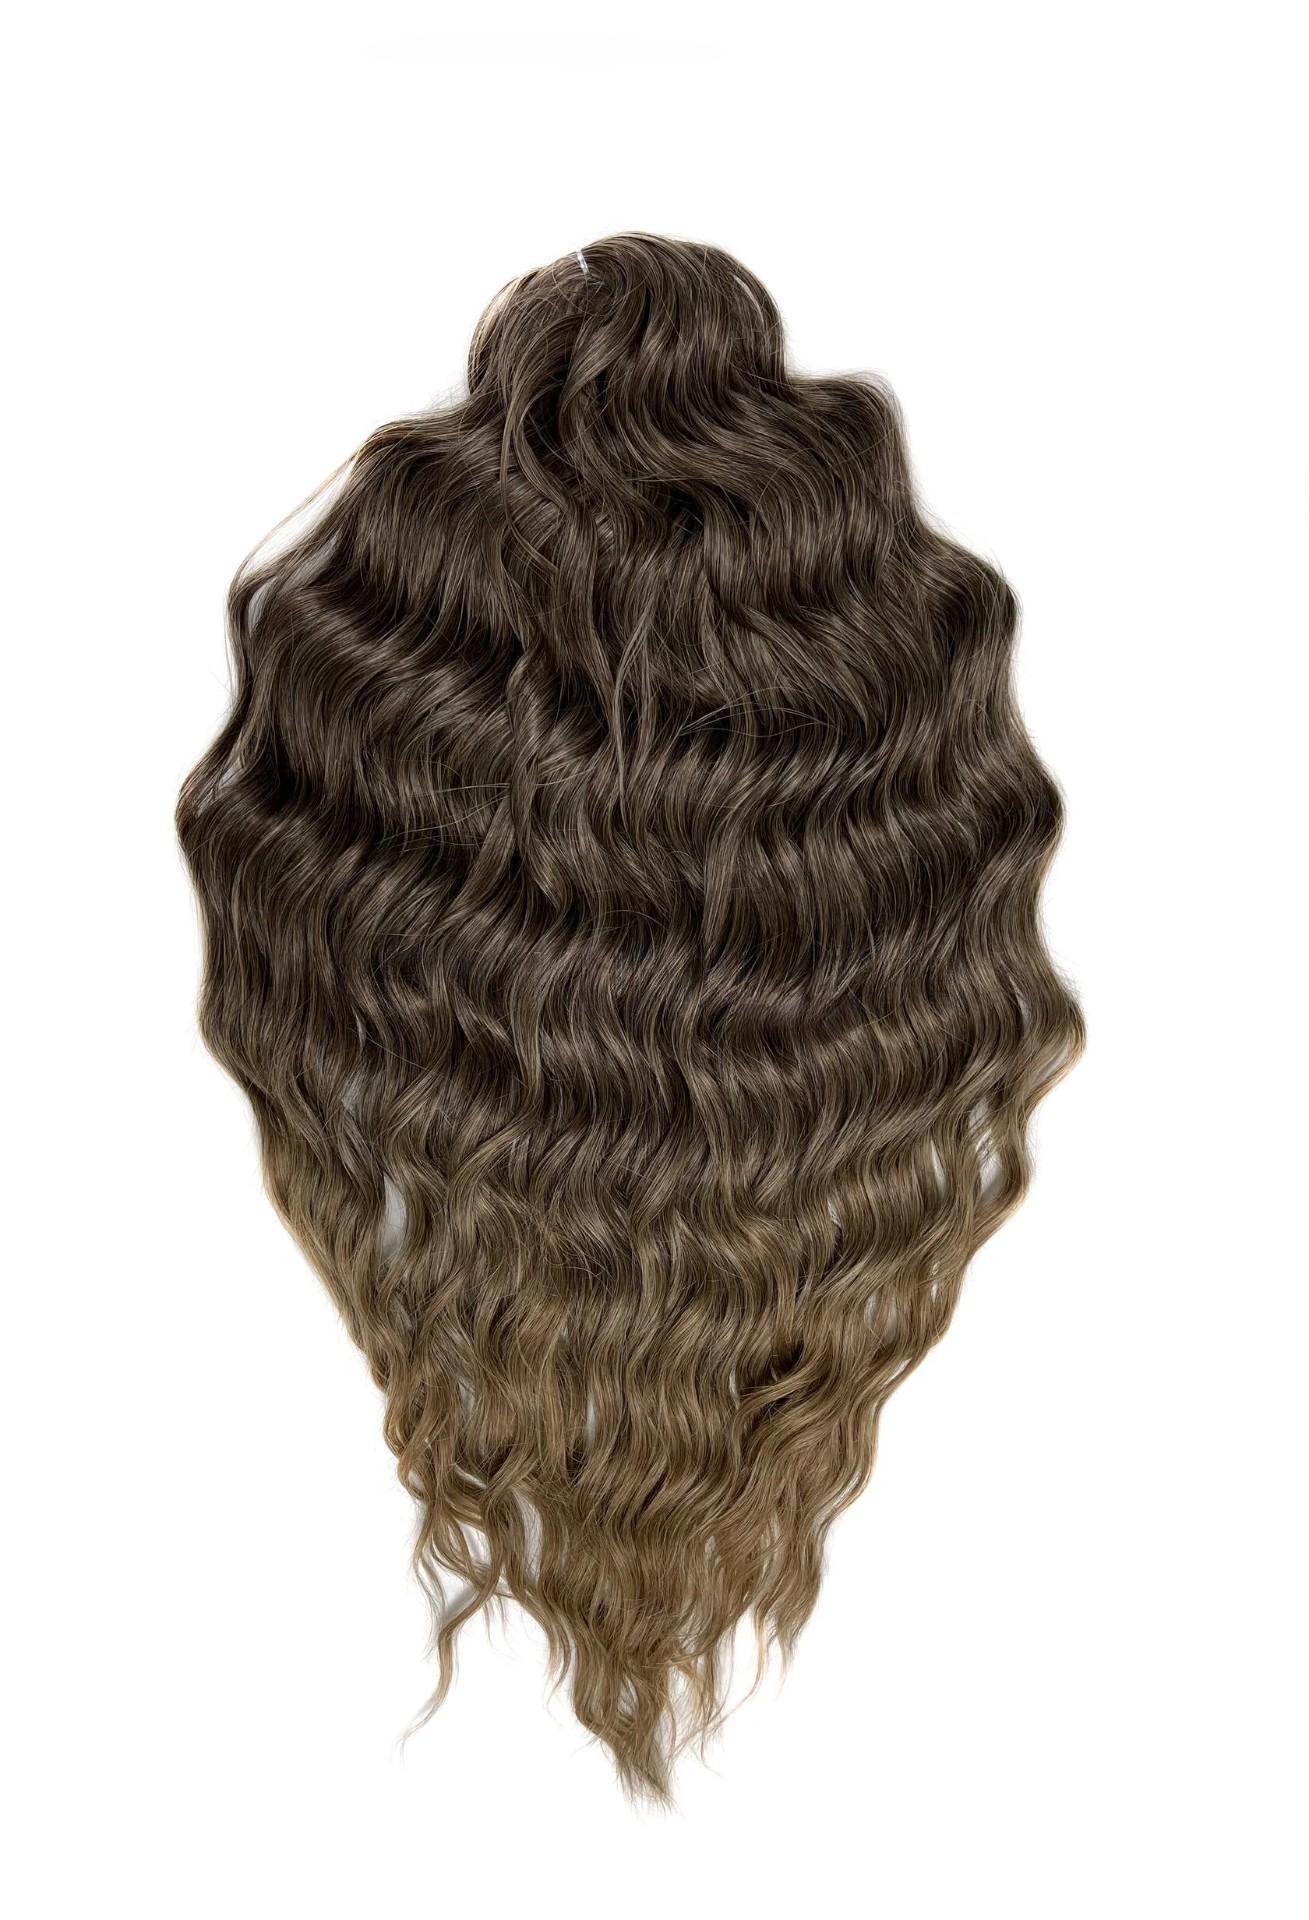 Афрокудри для плетения волос Anna T8 14 русый длина 60 вес 300г резиночки для плетения браслетов rainbow loom коллекция средневековье лайм